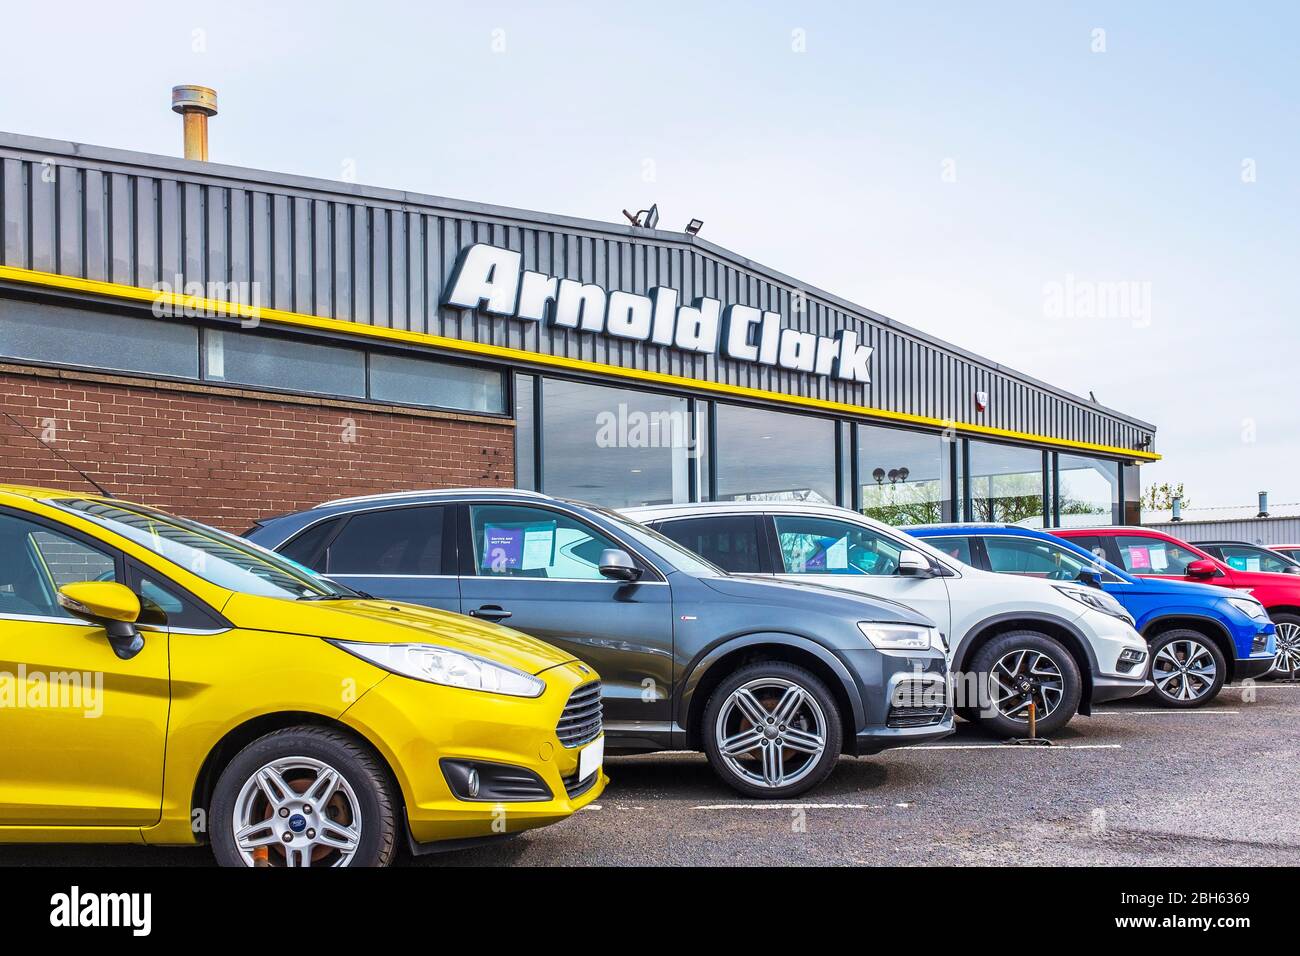 Arnold Clark concessionnaire de voitures piste avec une sélection de voitures d'occasion en vente sur présentation, Irvine, Ayrshire, Écosse, Royaume-Uni Banque D'Images